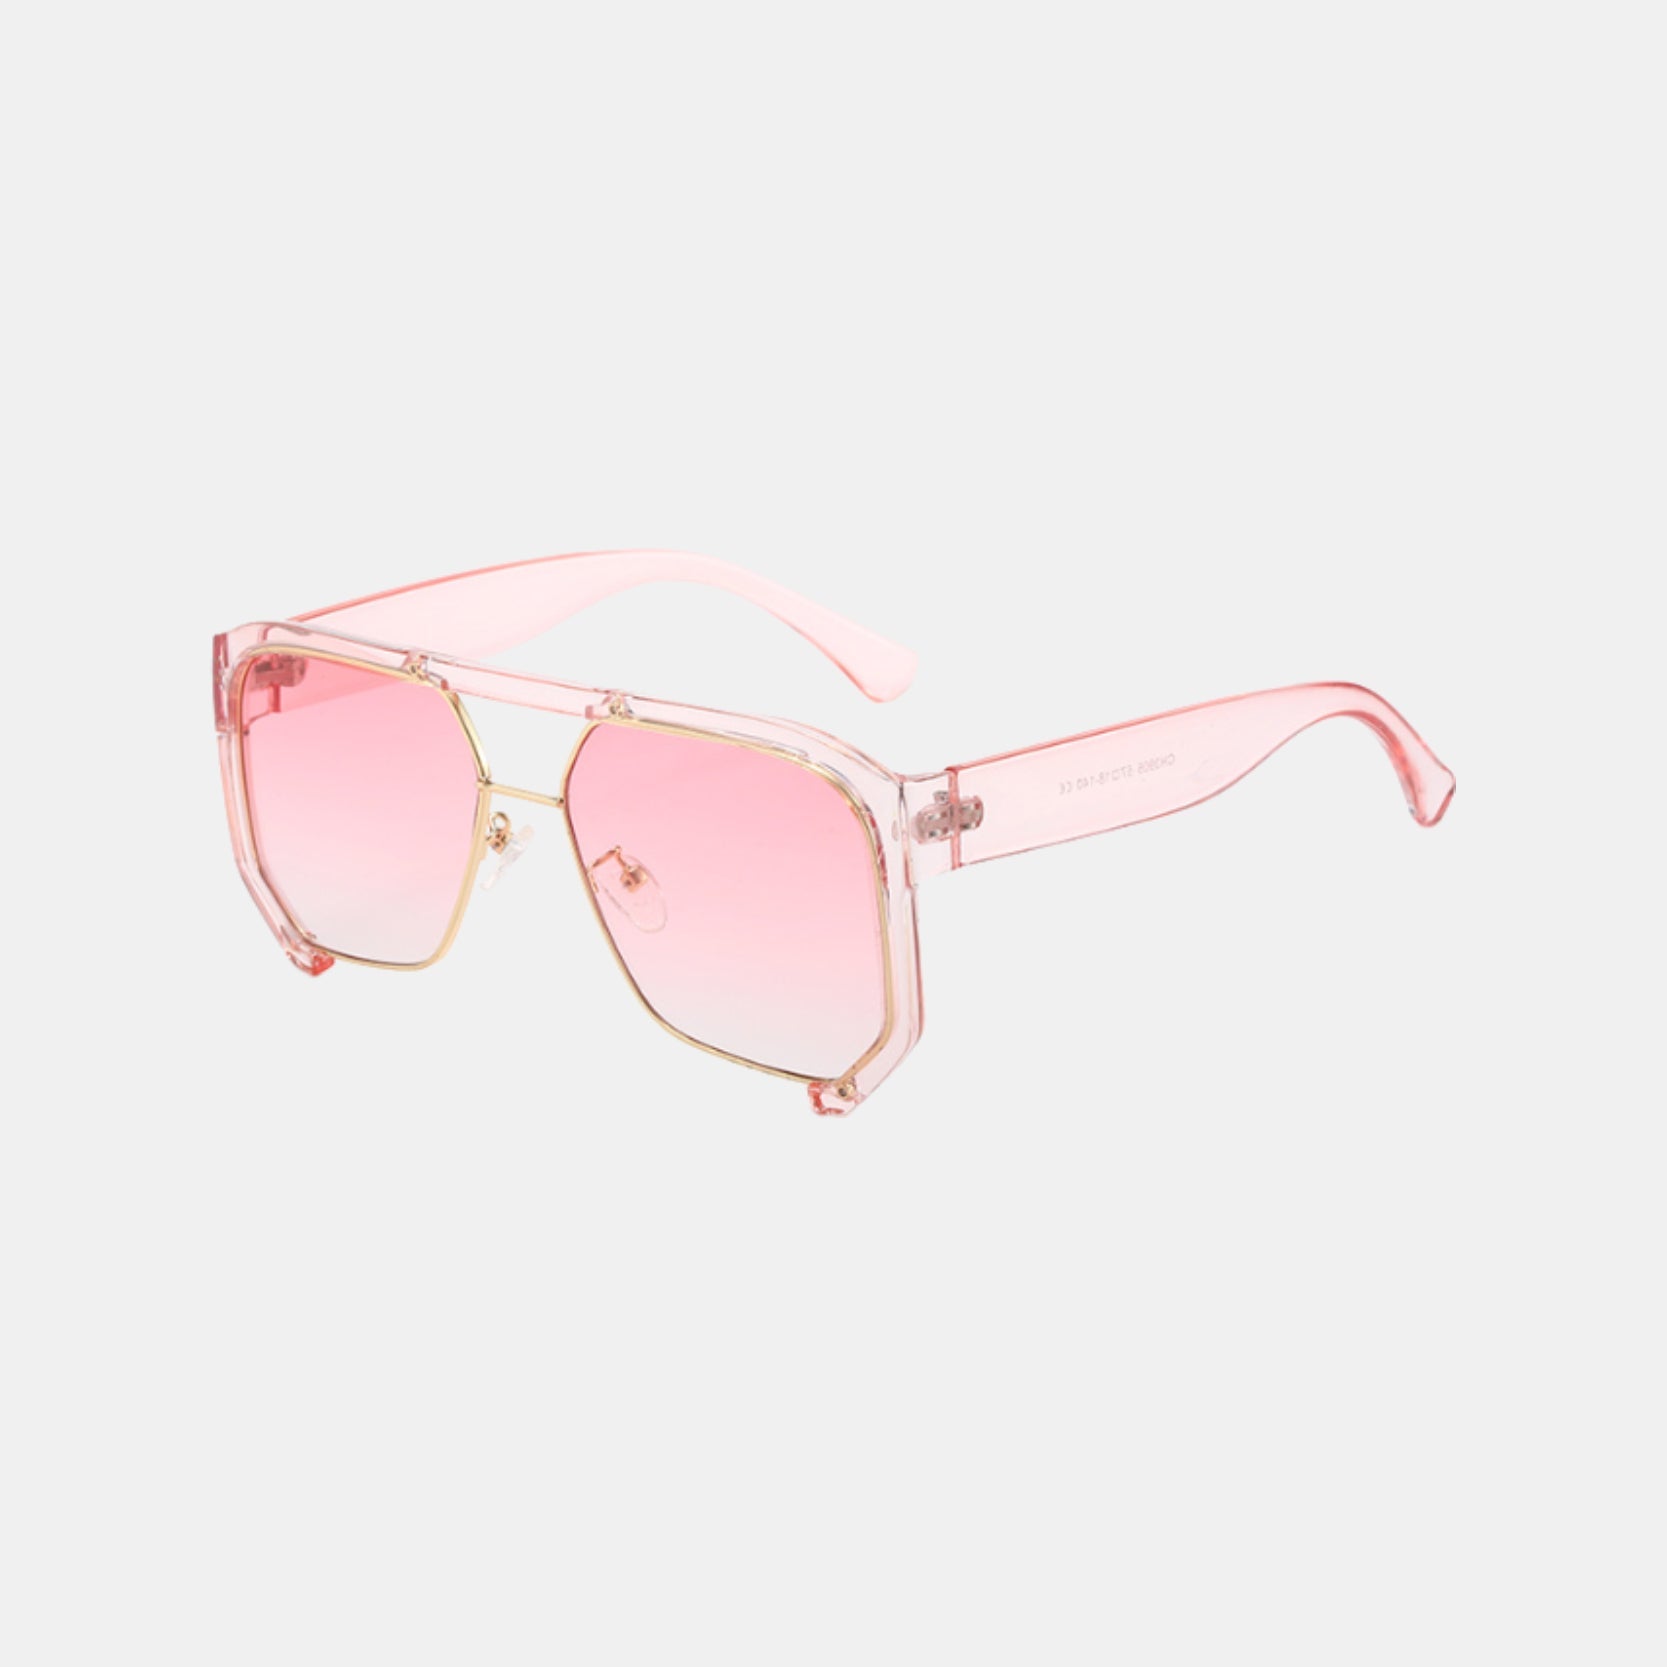 CRUSHER. - Blank Sunglasses